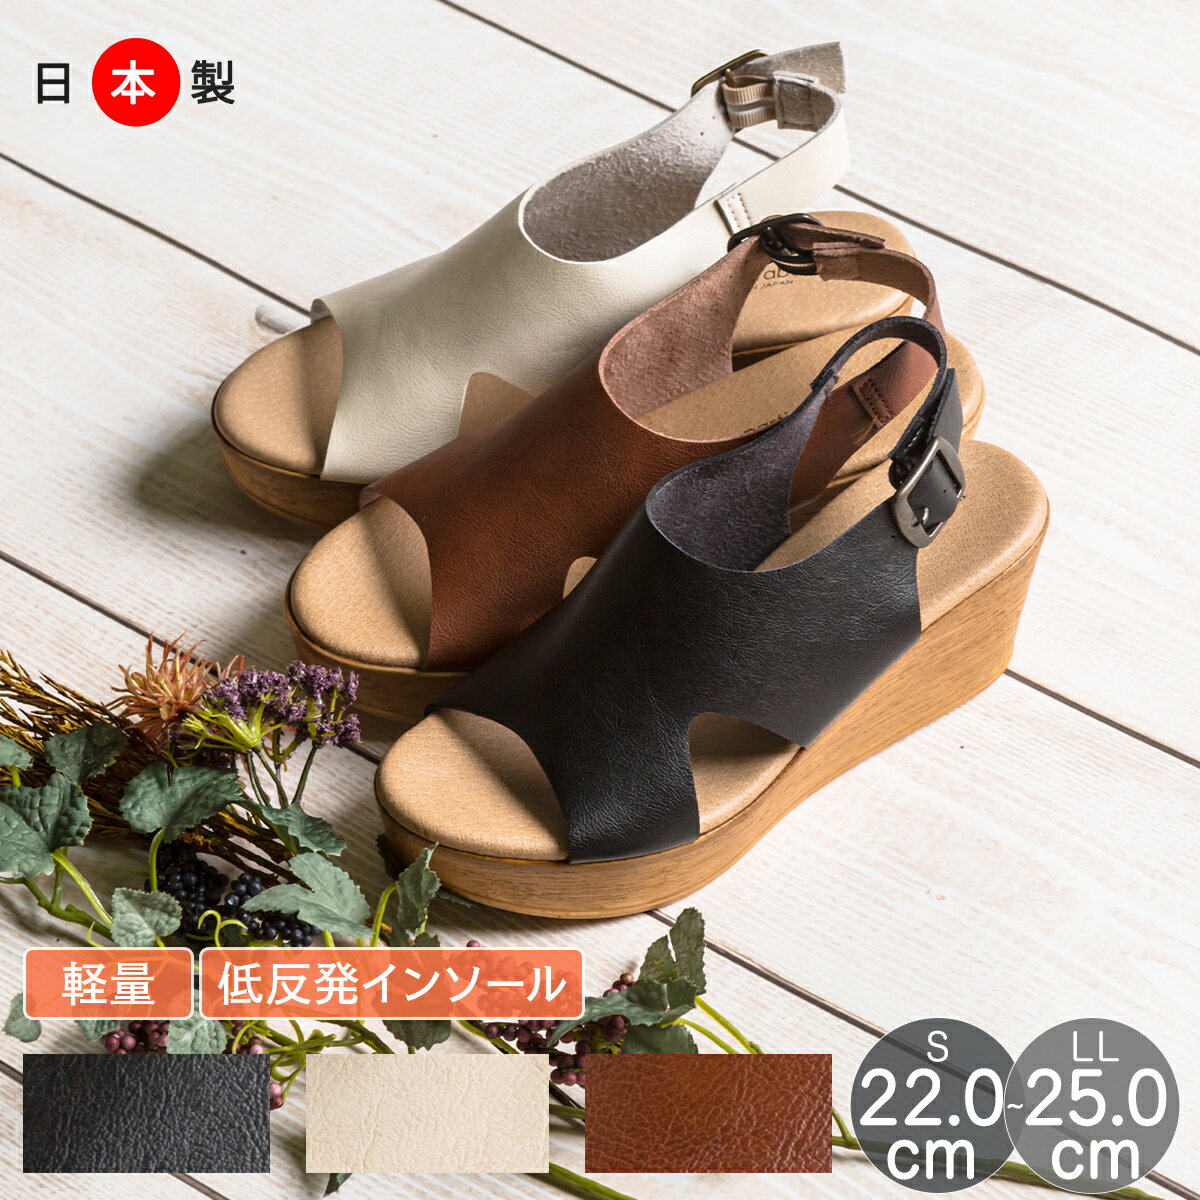 サンダル ウェッジソール 厚底 7cm ヒール オープントゥ グルカサンダル ベルト付き 靴 レディースシューズ 婦人靴 日本製 痛くない カジュアル